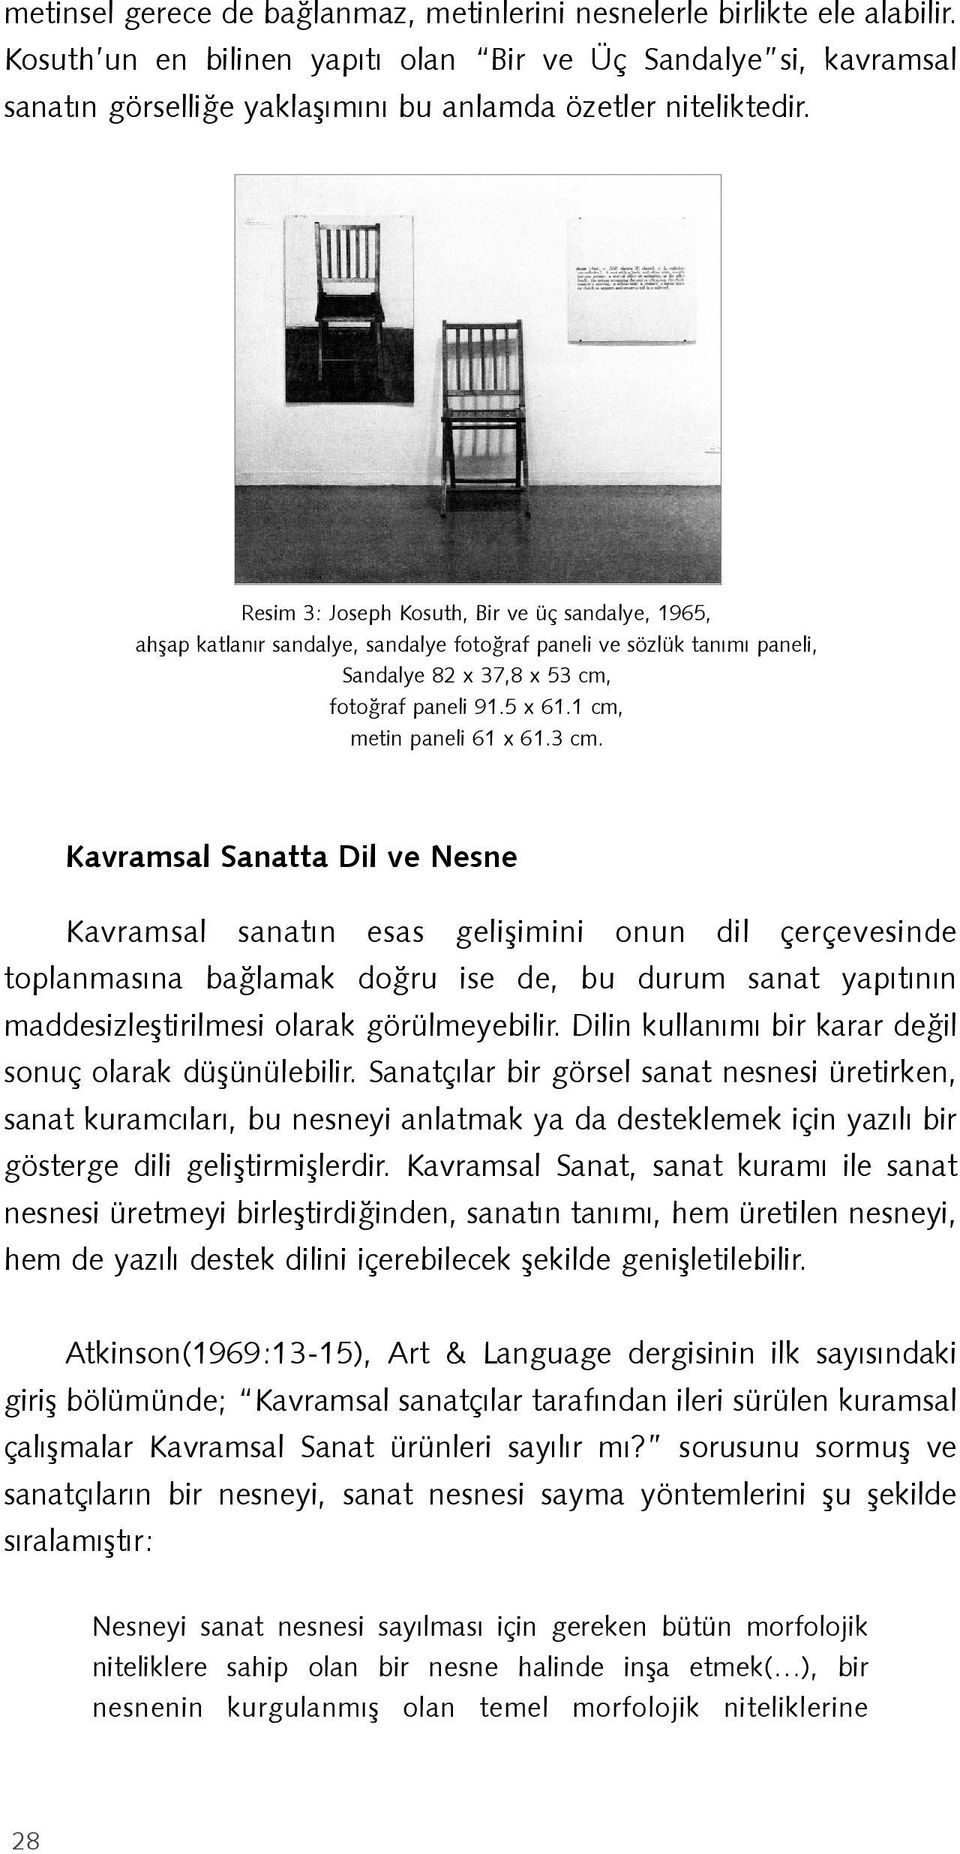 Resim 3: Joseph Kosuth, Bir ve üç sandalye, 1965, ahşap katlanır sandalye, sandalye fotoğraf paneli ve sözlük tanımı paneli, Sandalye 82 x 37,8 x 53 cm, fotoğraf paneli 91.5 x 61.